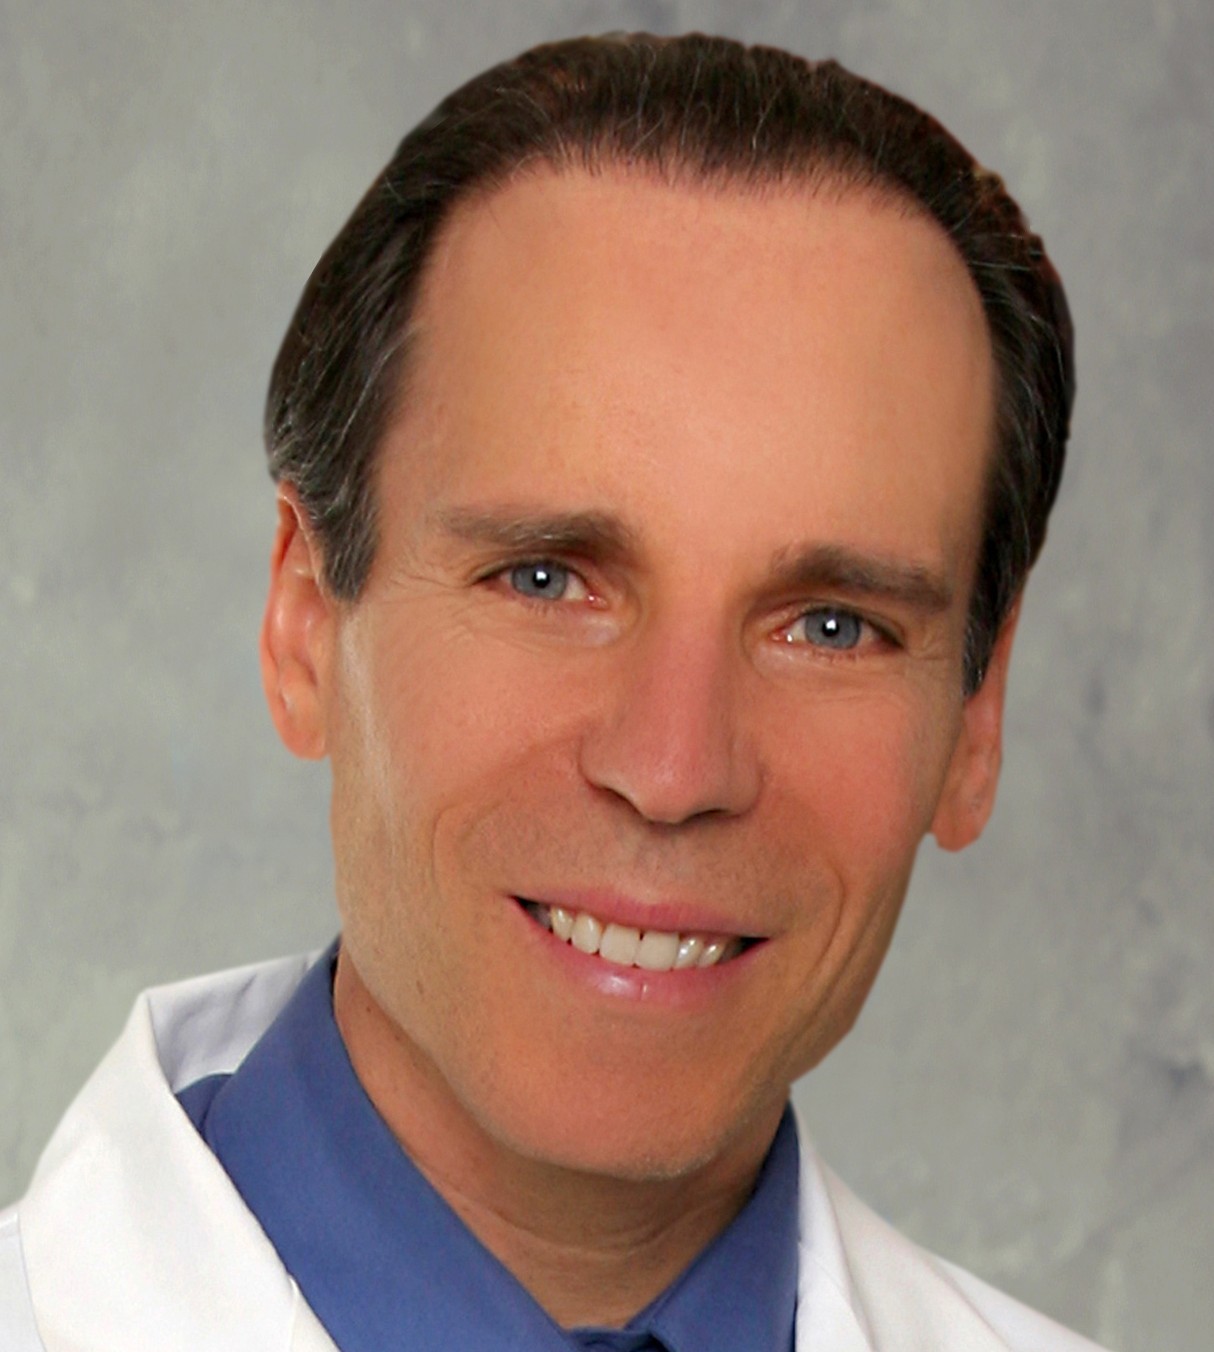 Dr. Joel Fuhrman: Vegan Diet May Help Reduce Risk of Osteoporosis